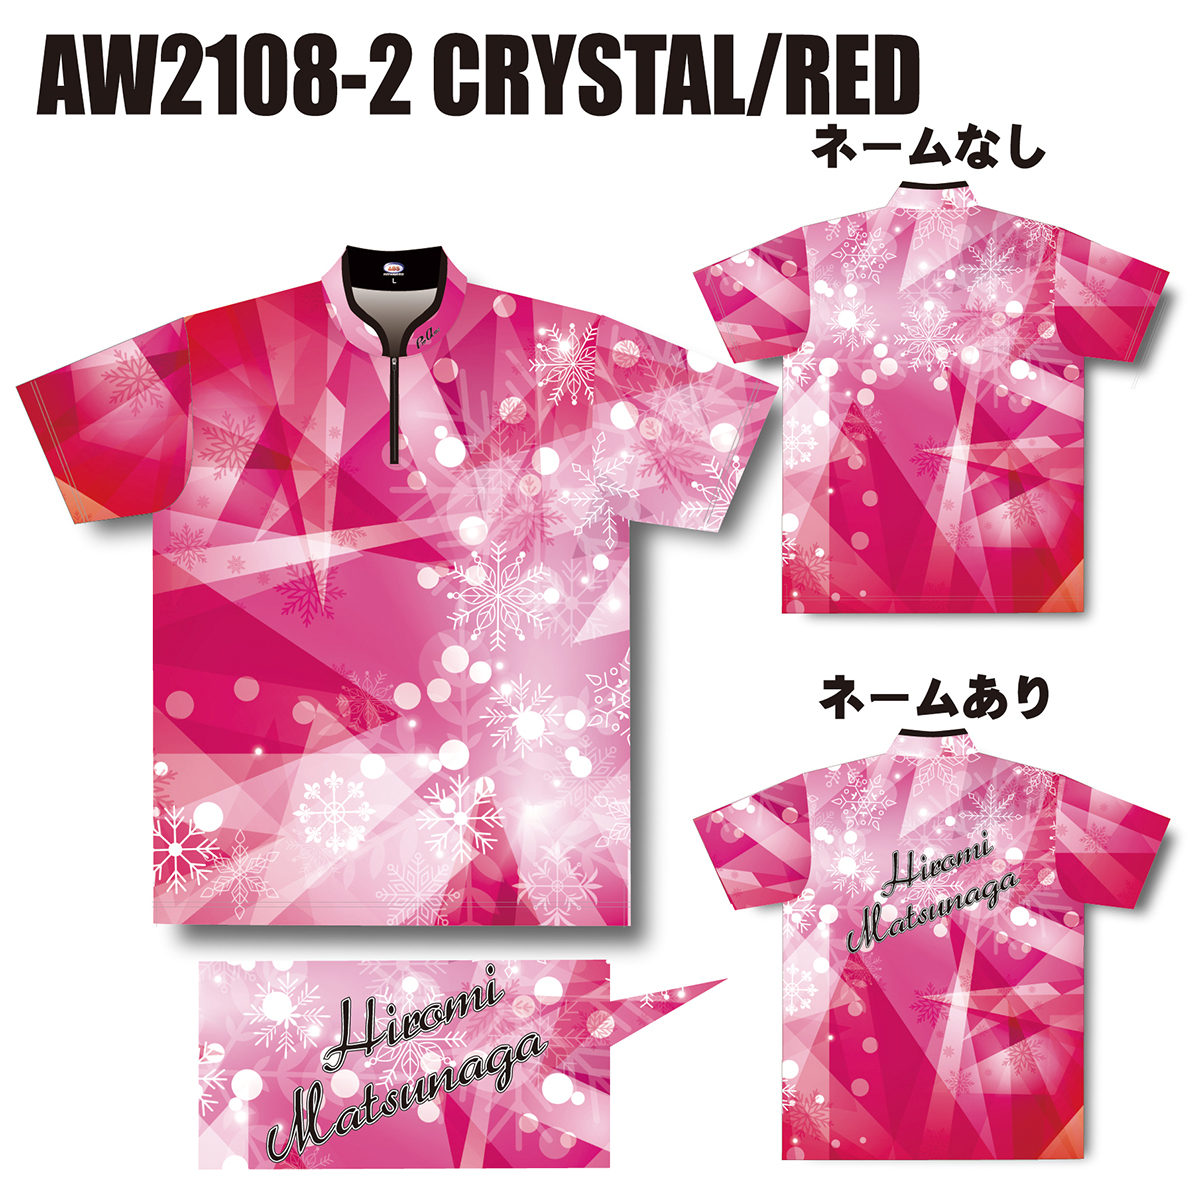 2021ウインターモデル(AW2108-2 CRYSTAL/RED)